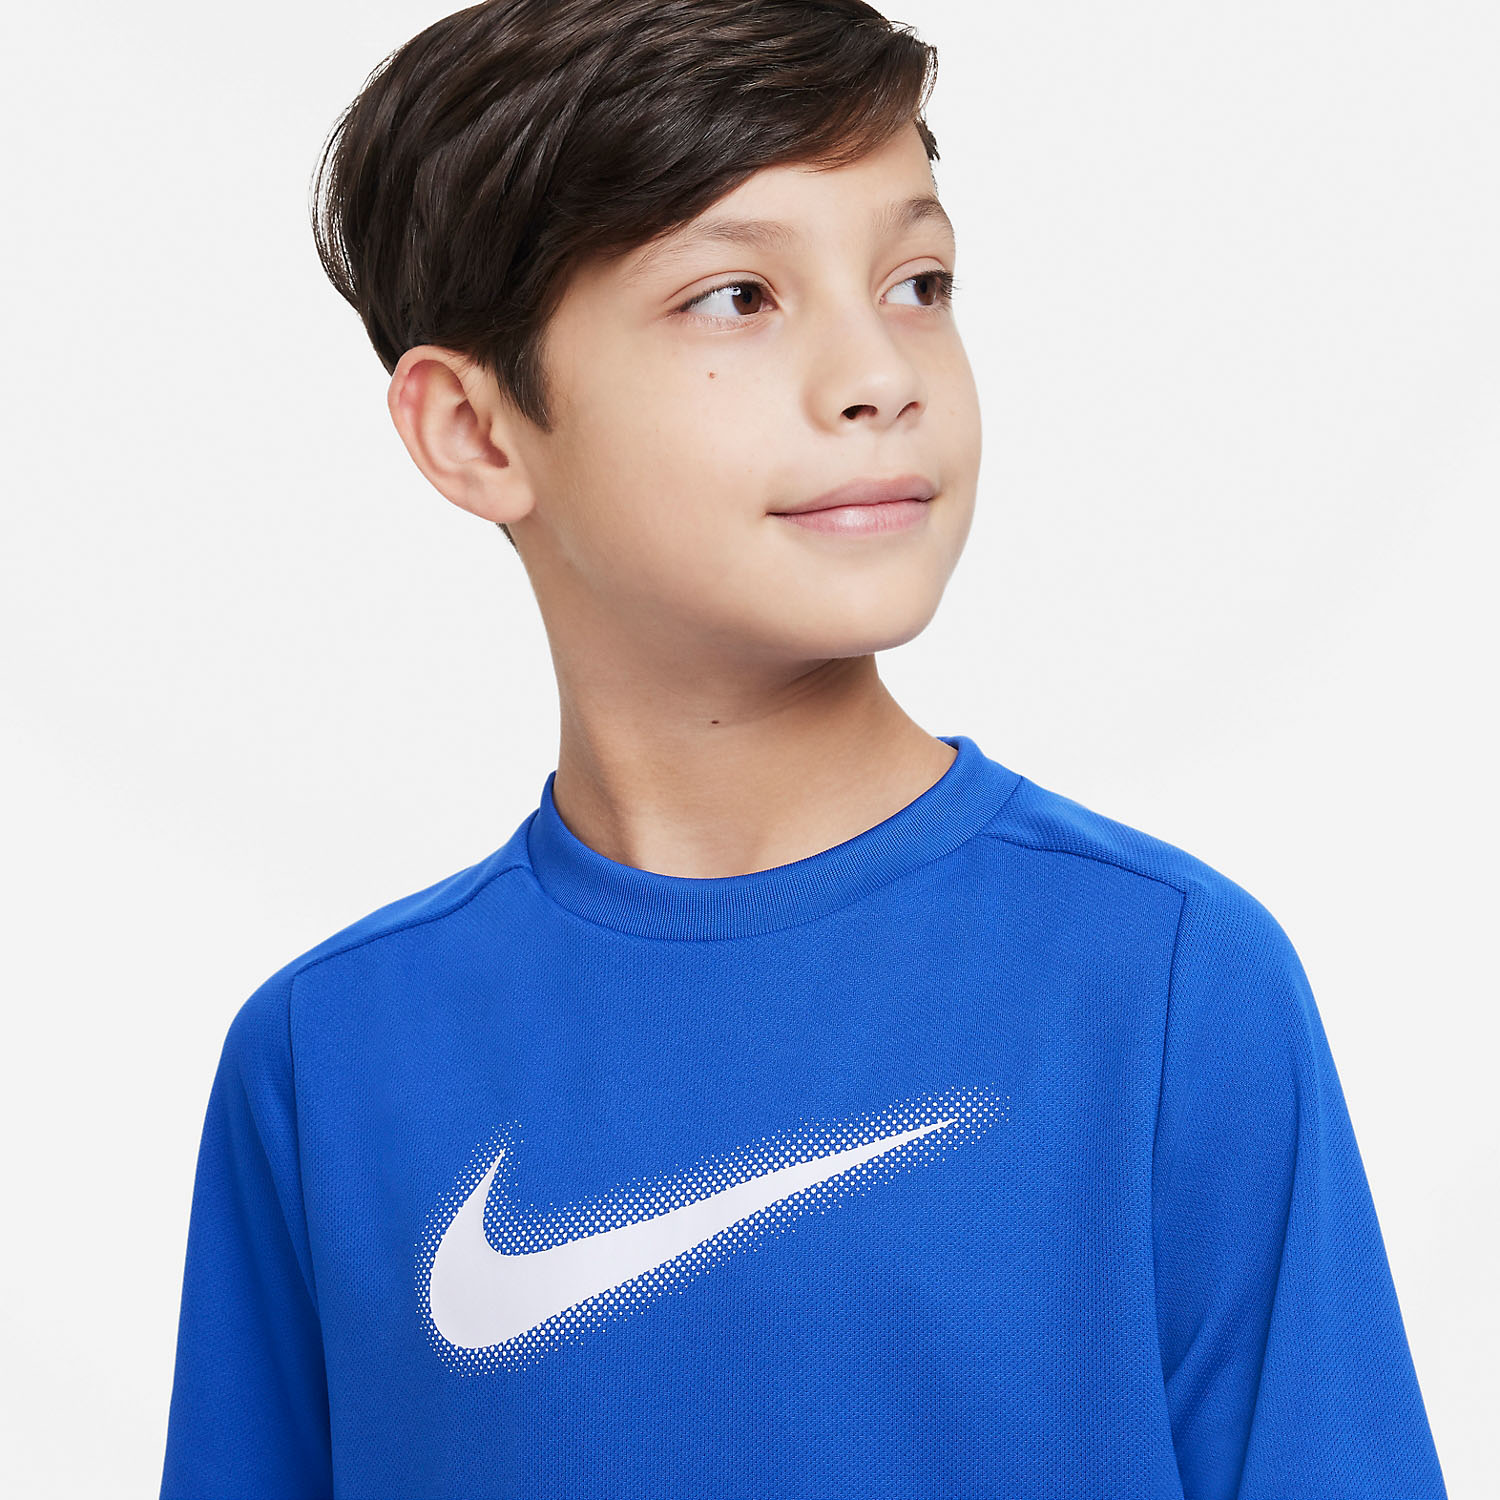 Nike Dri-FIT Icon Camiseta Niño - Game Royal/White